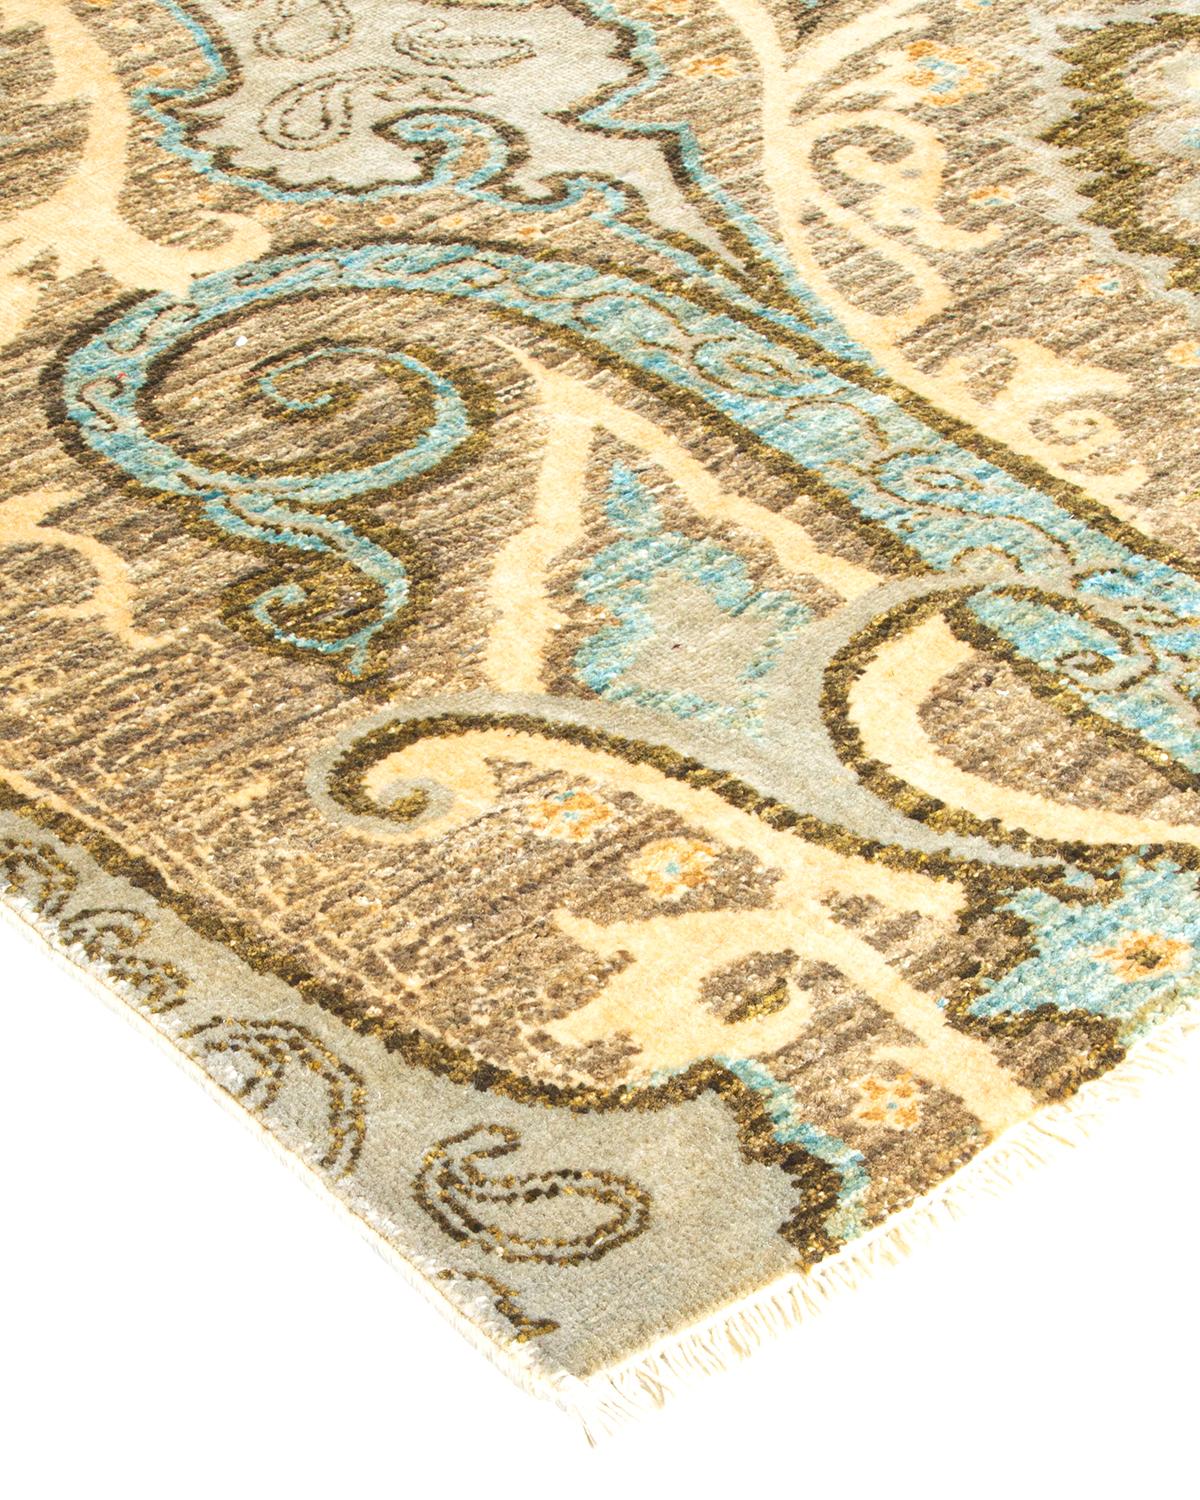 Die akribische Kunst der handgestickten Textilien usbekischer Stämme inspirierte die Suzani-Teppichkollektion. Kräftige Motive, vor allem Granatäpfel, Sonne und Mond, sind häufige Elemente, deren einfache, aber überzeugende Designs in Wolle und